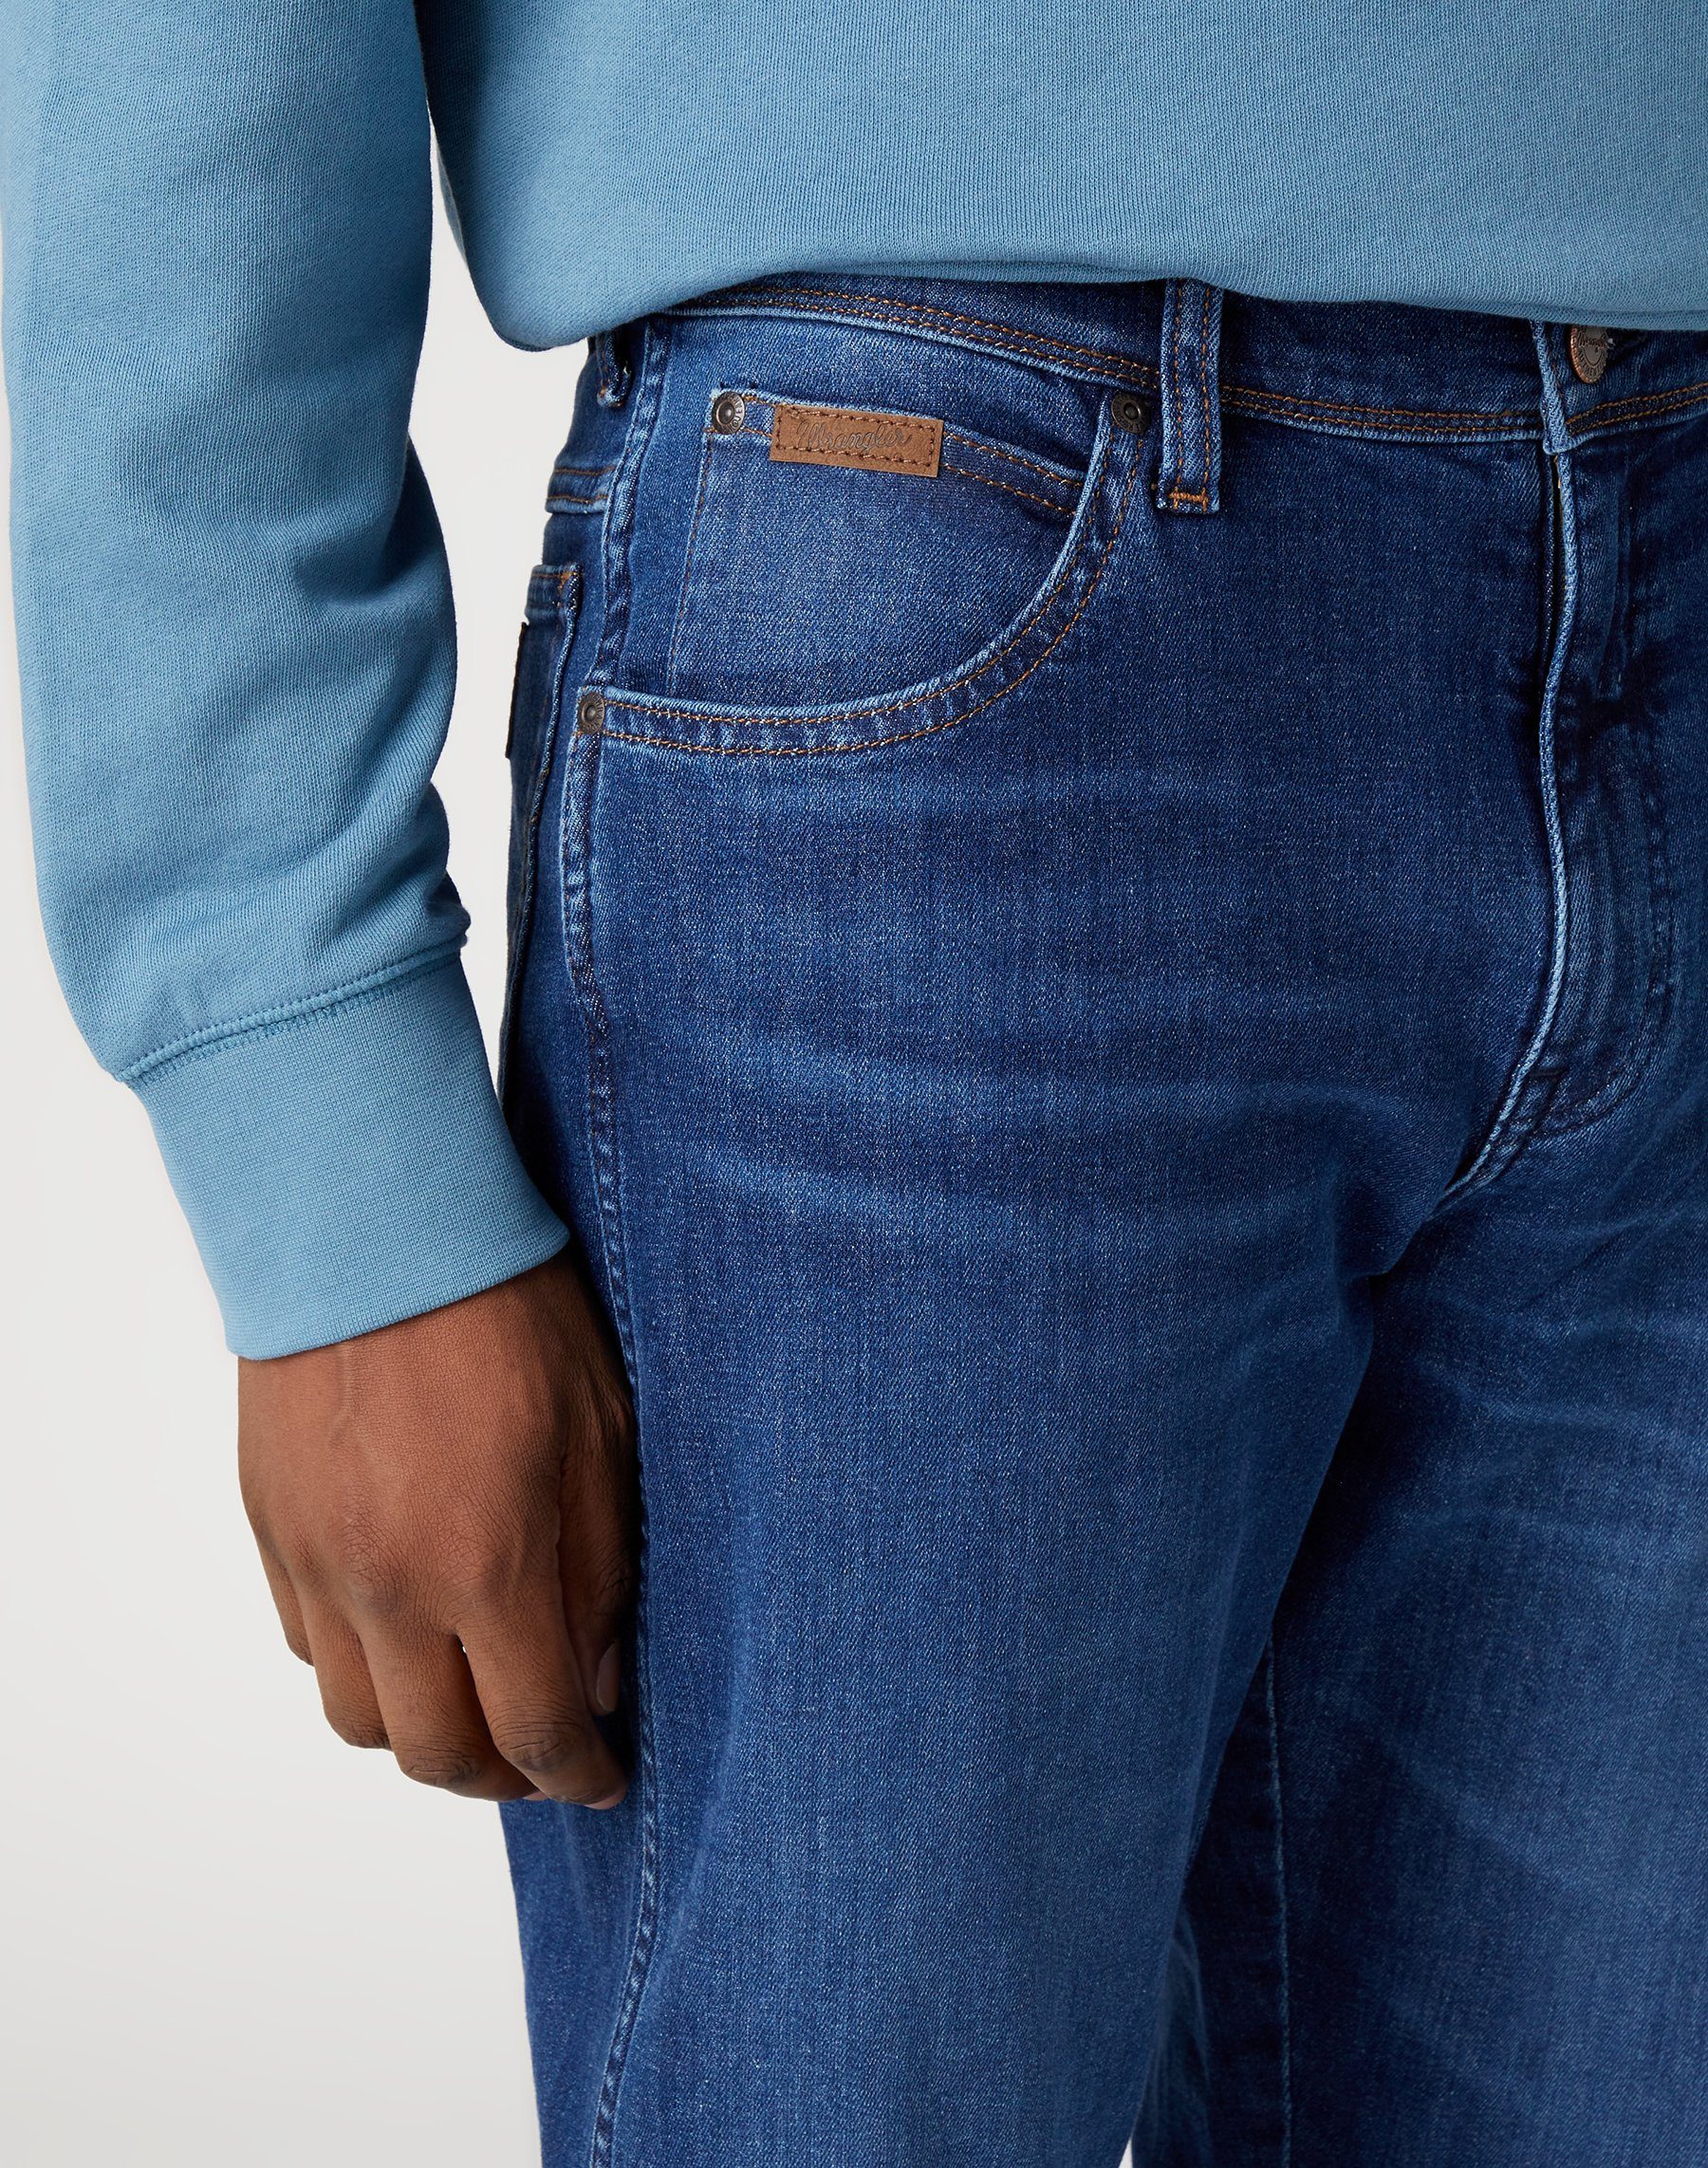 5-Pocket-Jeans WRANGLER way Wrangler free W121YJZ99 TEXAS